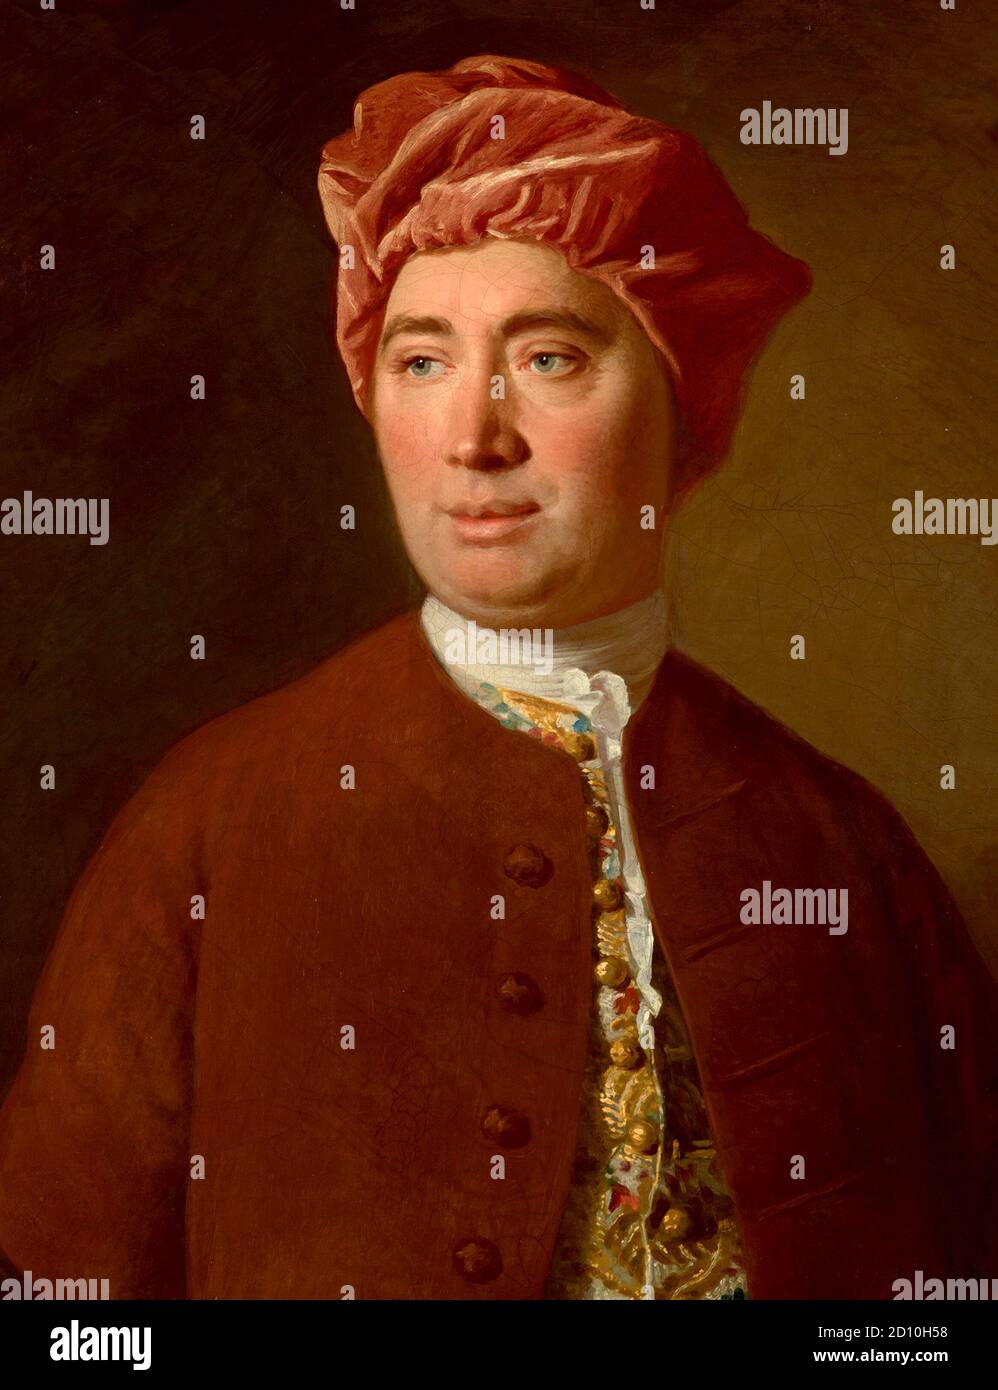 David Hume (geb.: David Home; 1711 – 25) Schottischer Philosoph, Historiker und Essayist, der heute vor allem für sein einflussreiches System philosophischer Empirie, Skepsis und Naturalismus bekannt ist. Stockfoto